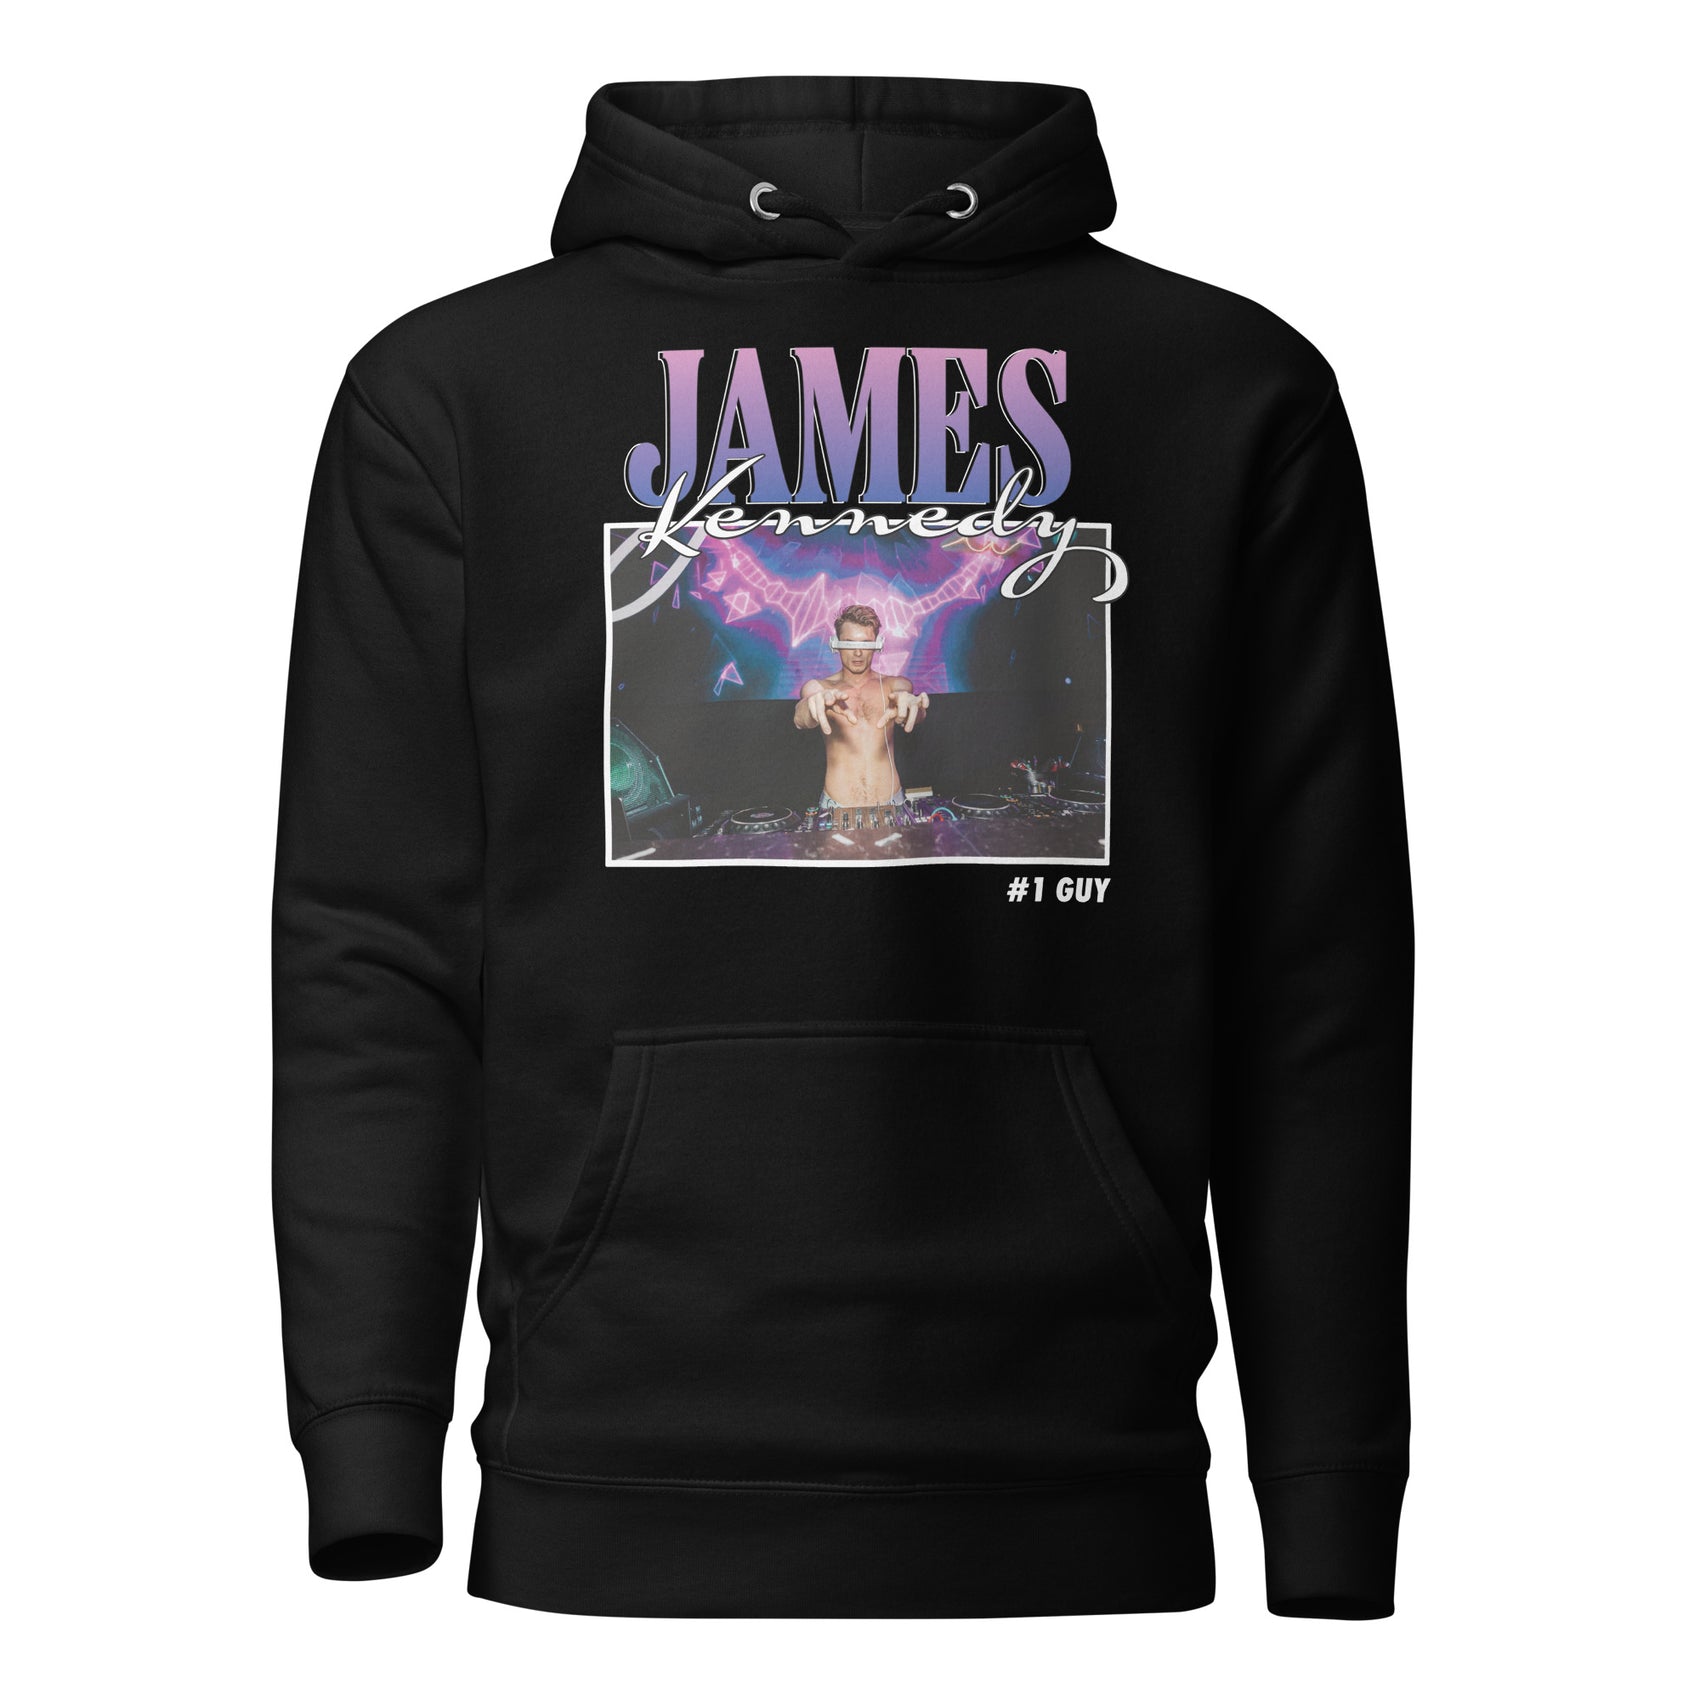 James Kennedy #1 guy black hoodie #1